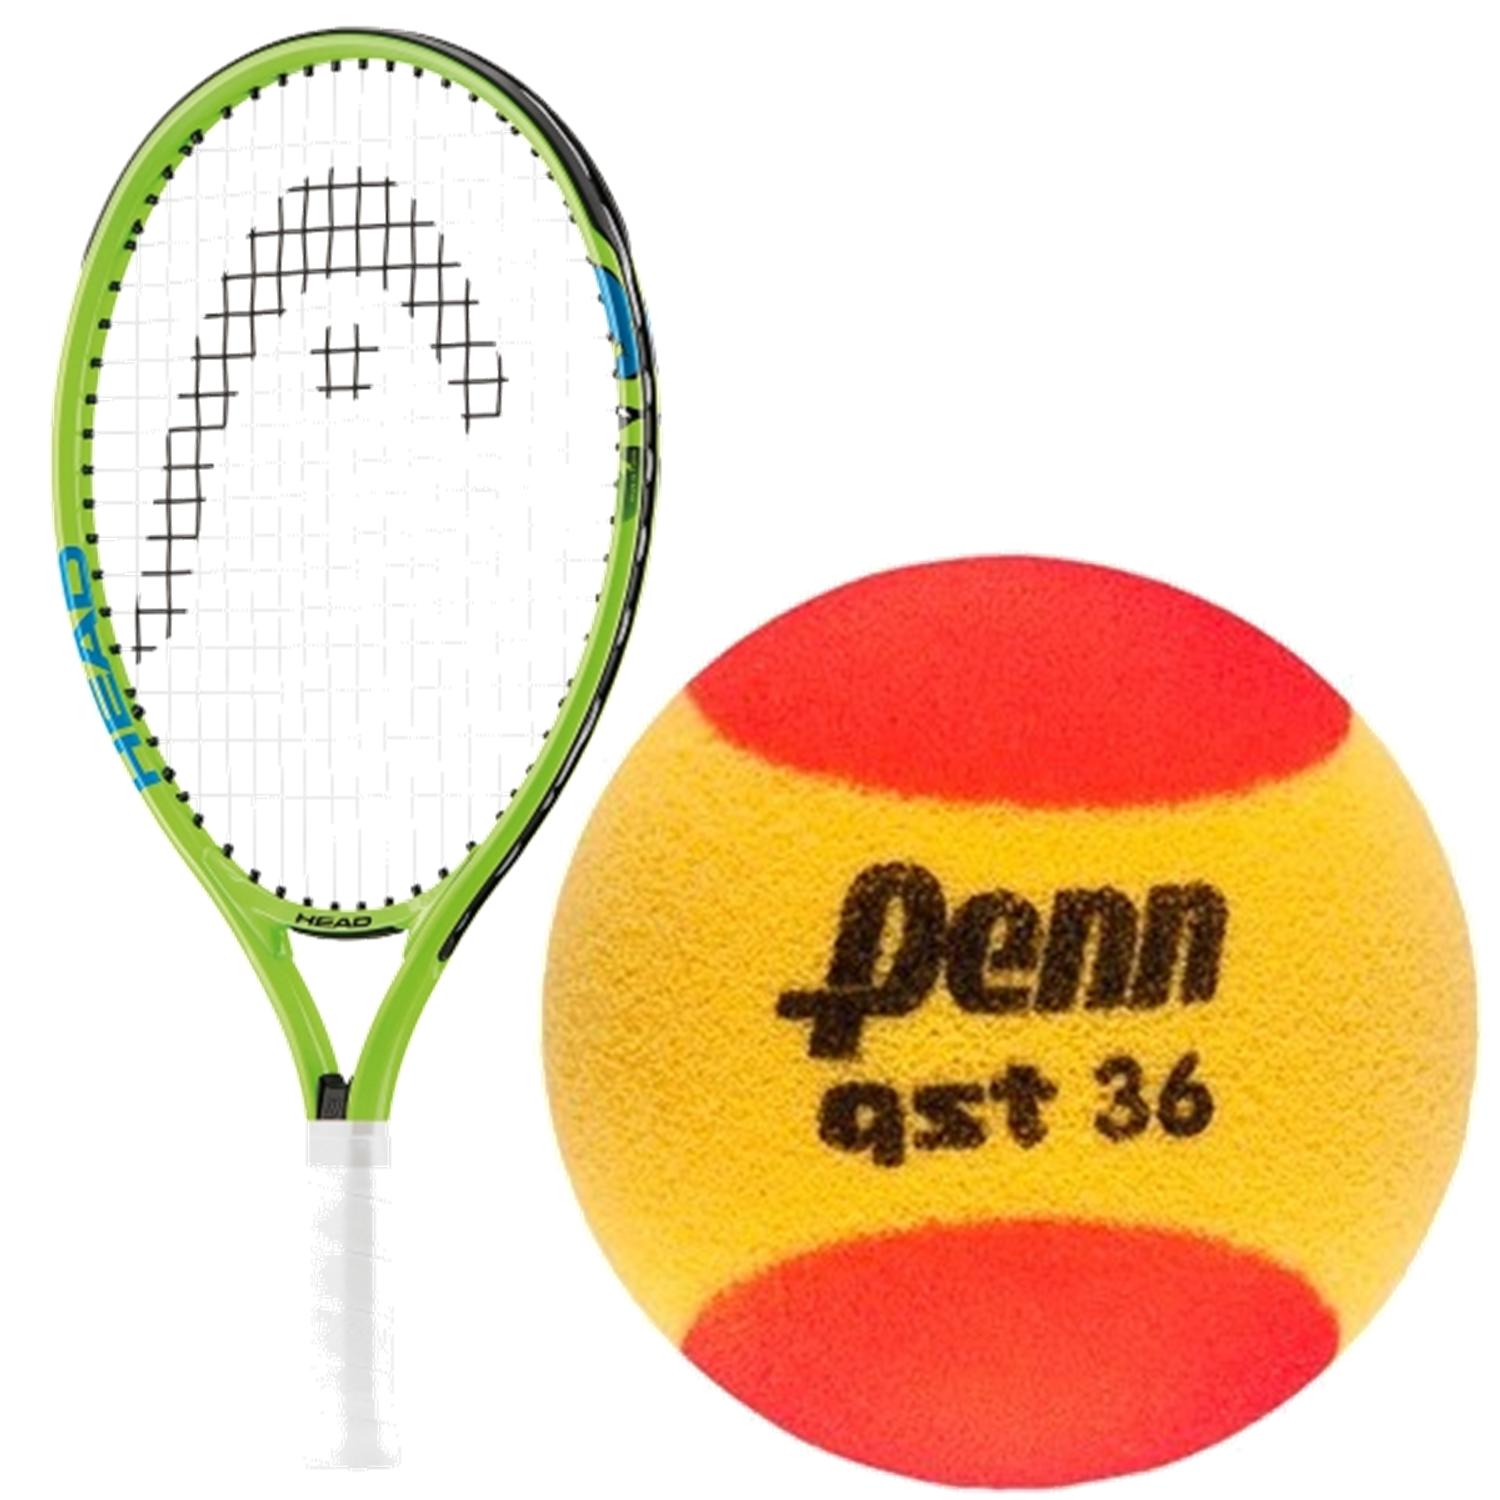 HEAD Speed Junior Tennis Racquet bundled with Penn QST 36 Red Foam Tennis Balls